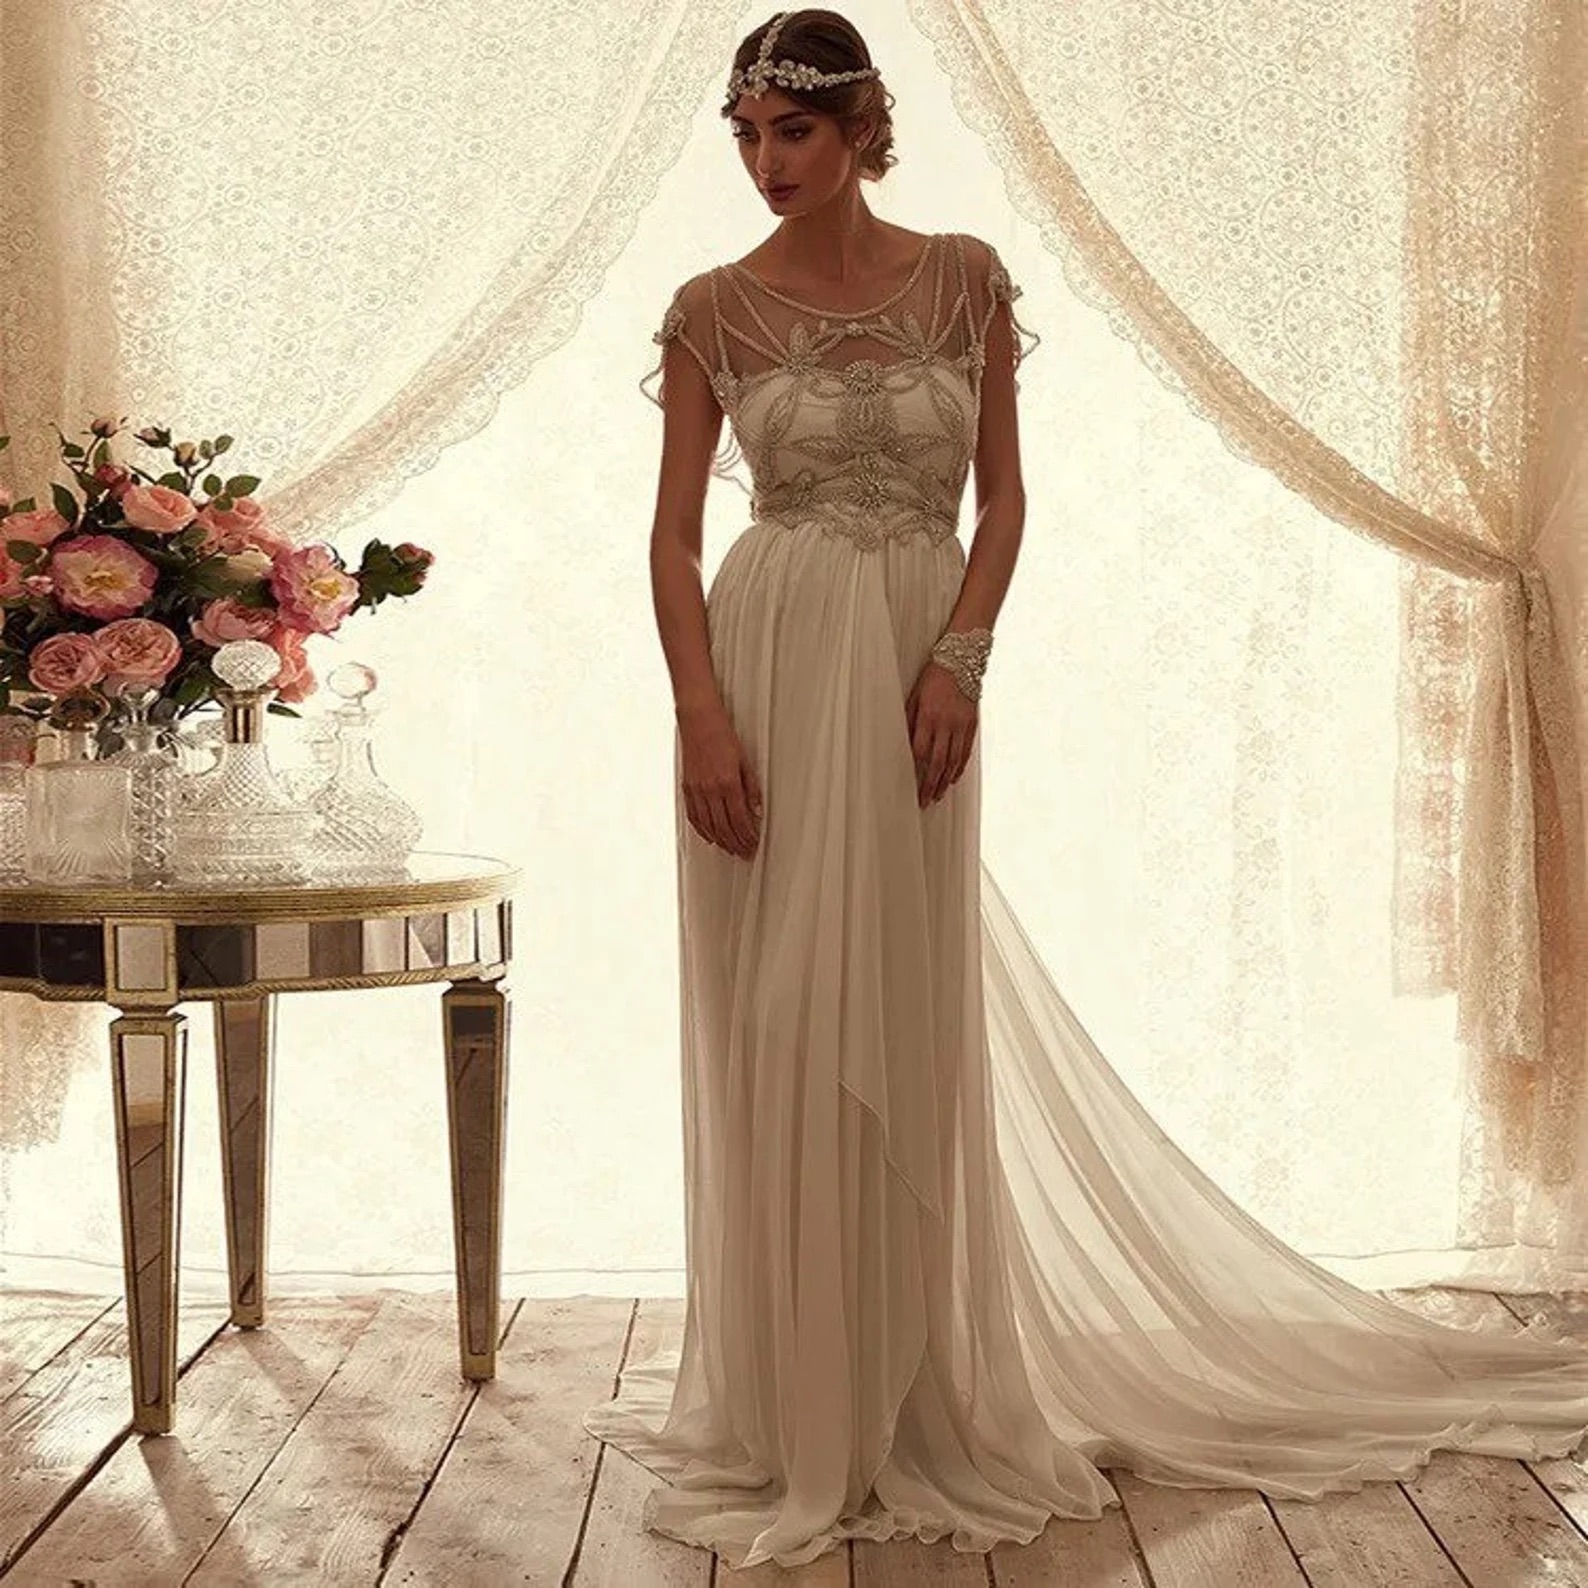 Glamorous Art Deco Wedding Gown | Eva